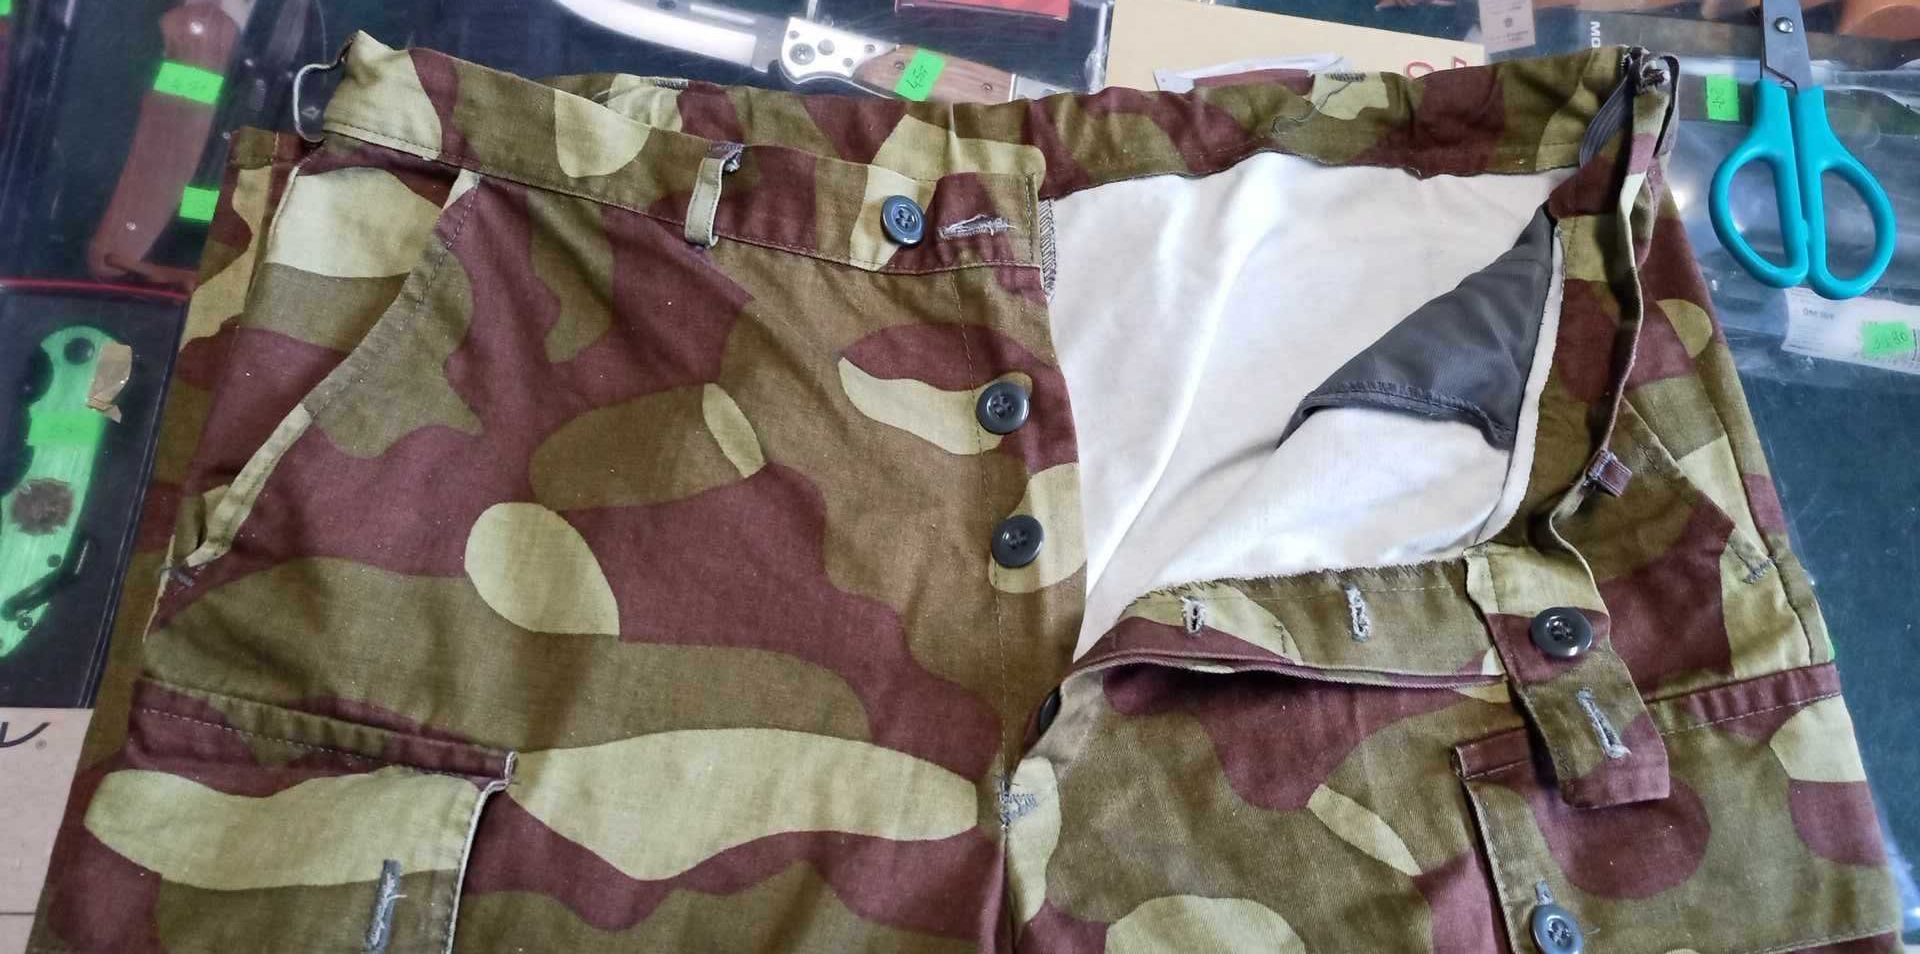 Mundur Armia Finlandia camo M62 spodnie pas96 +kurtka124 BDB Unikat